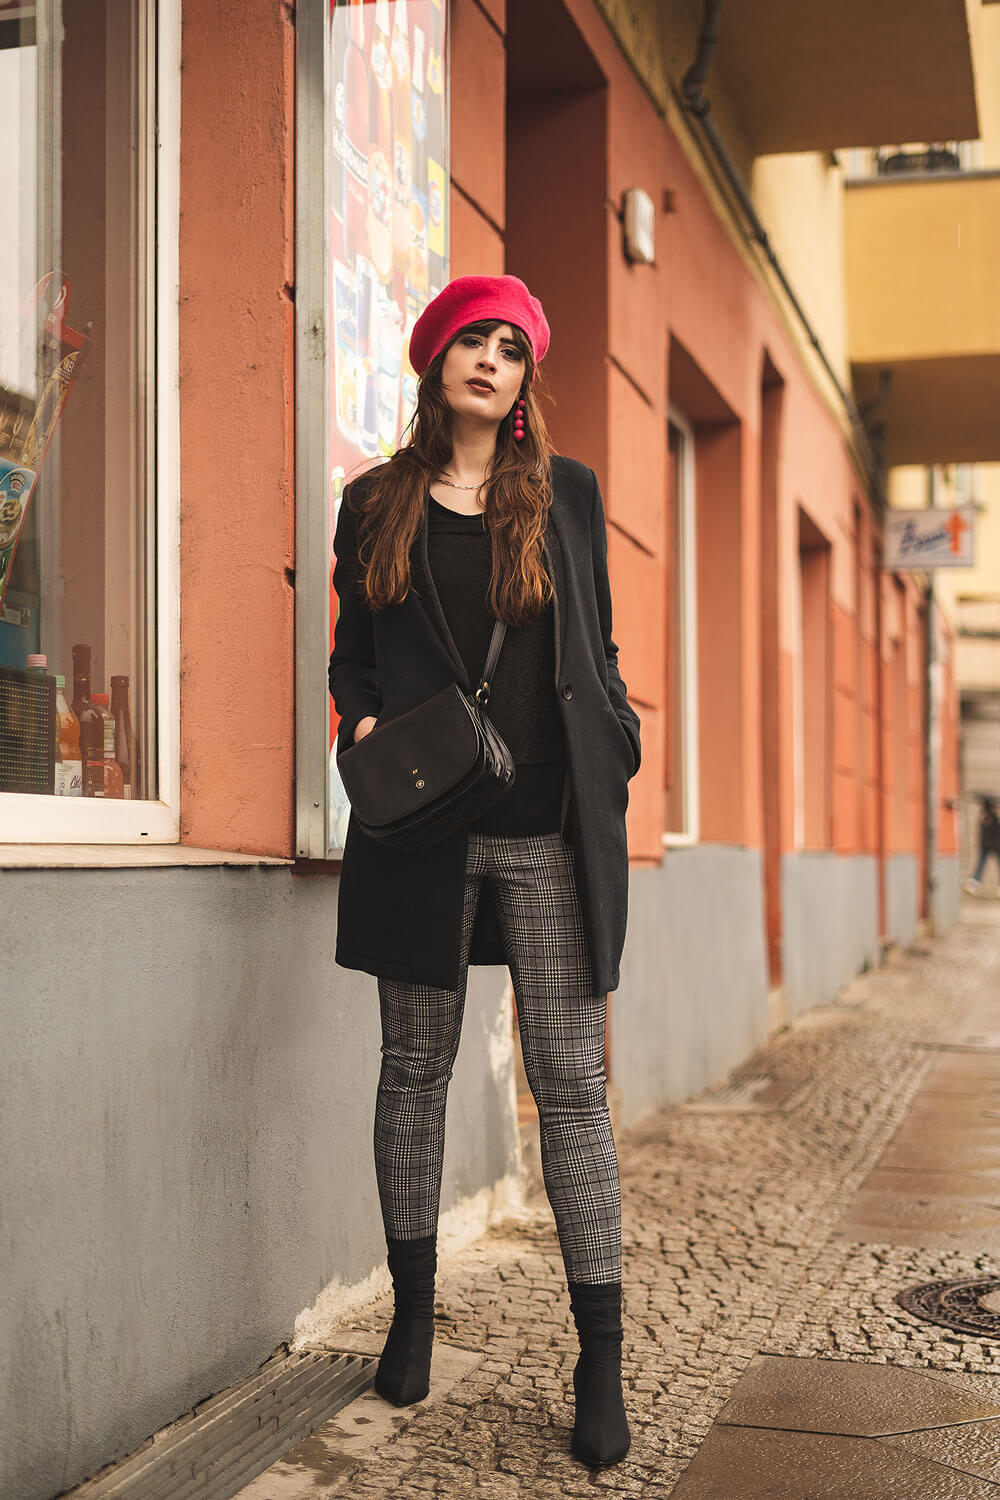 Baskenmütze-Farbtupfer zum Winterlook-Winteroutfit Modeblog-Shoelove Deichmann-andysparkles